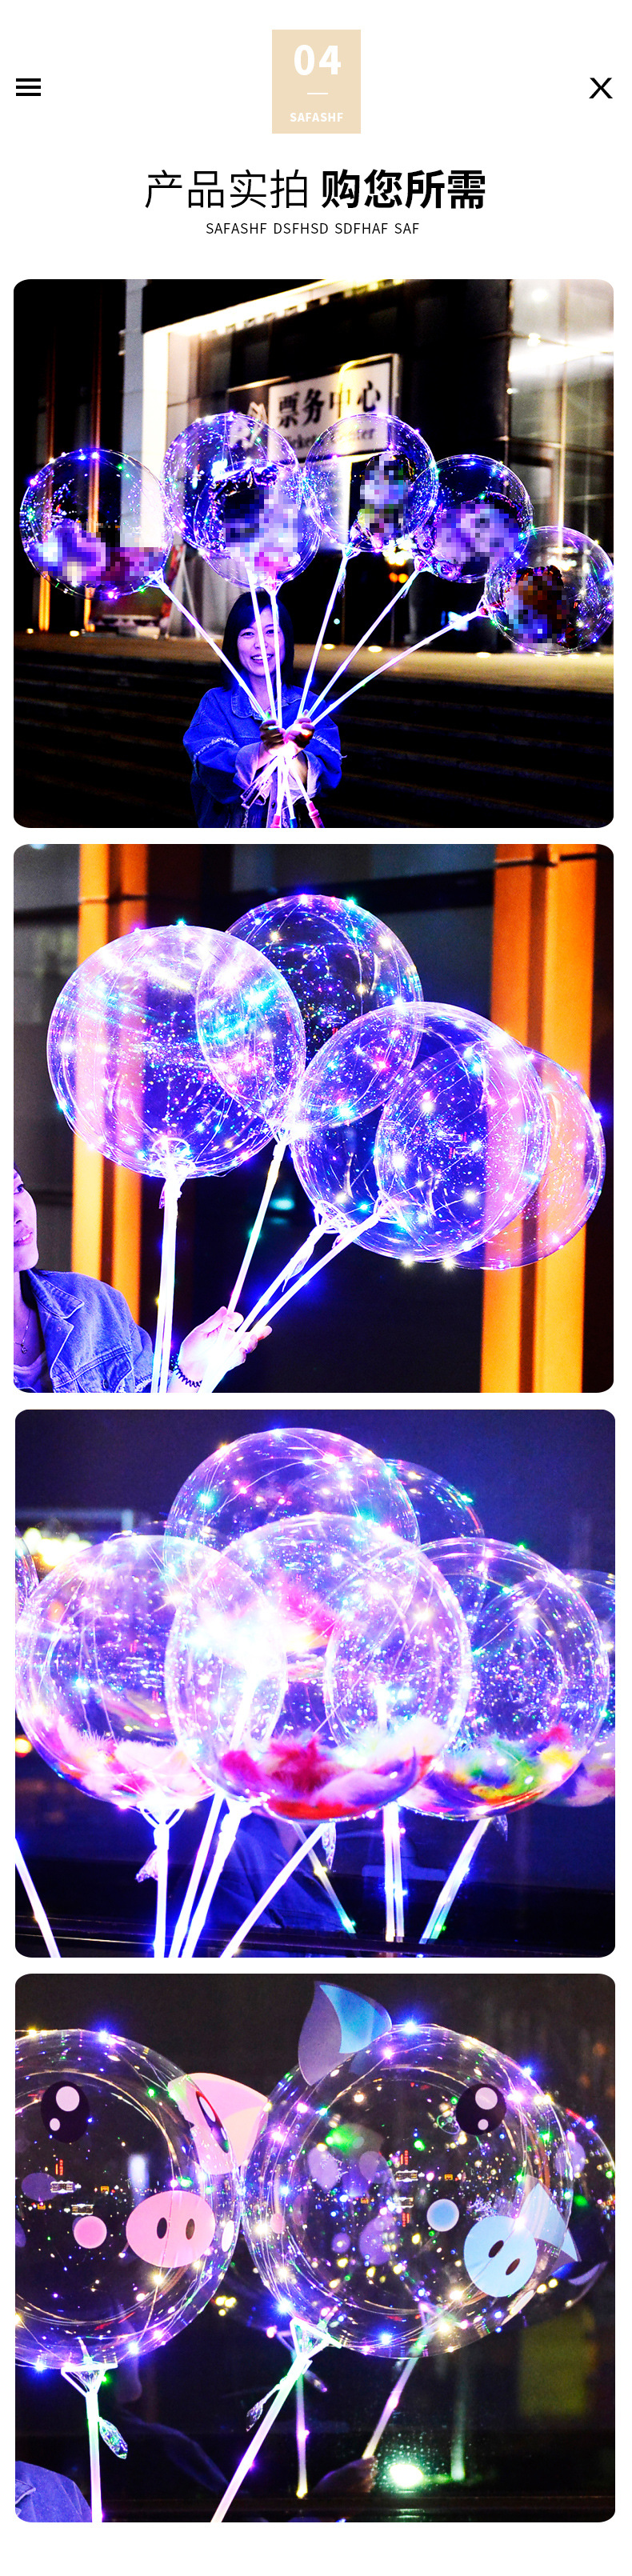 网红波波球广场热卖发光气球夜市摆摊波波球网红拍照发光气球详情6